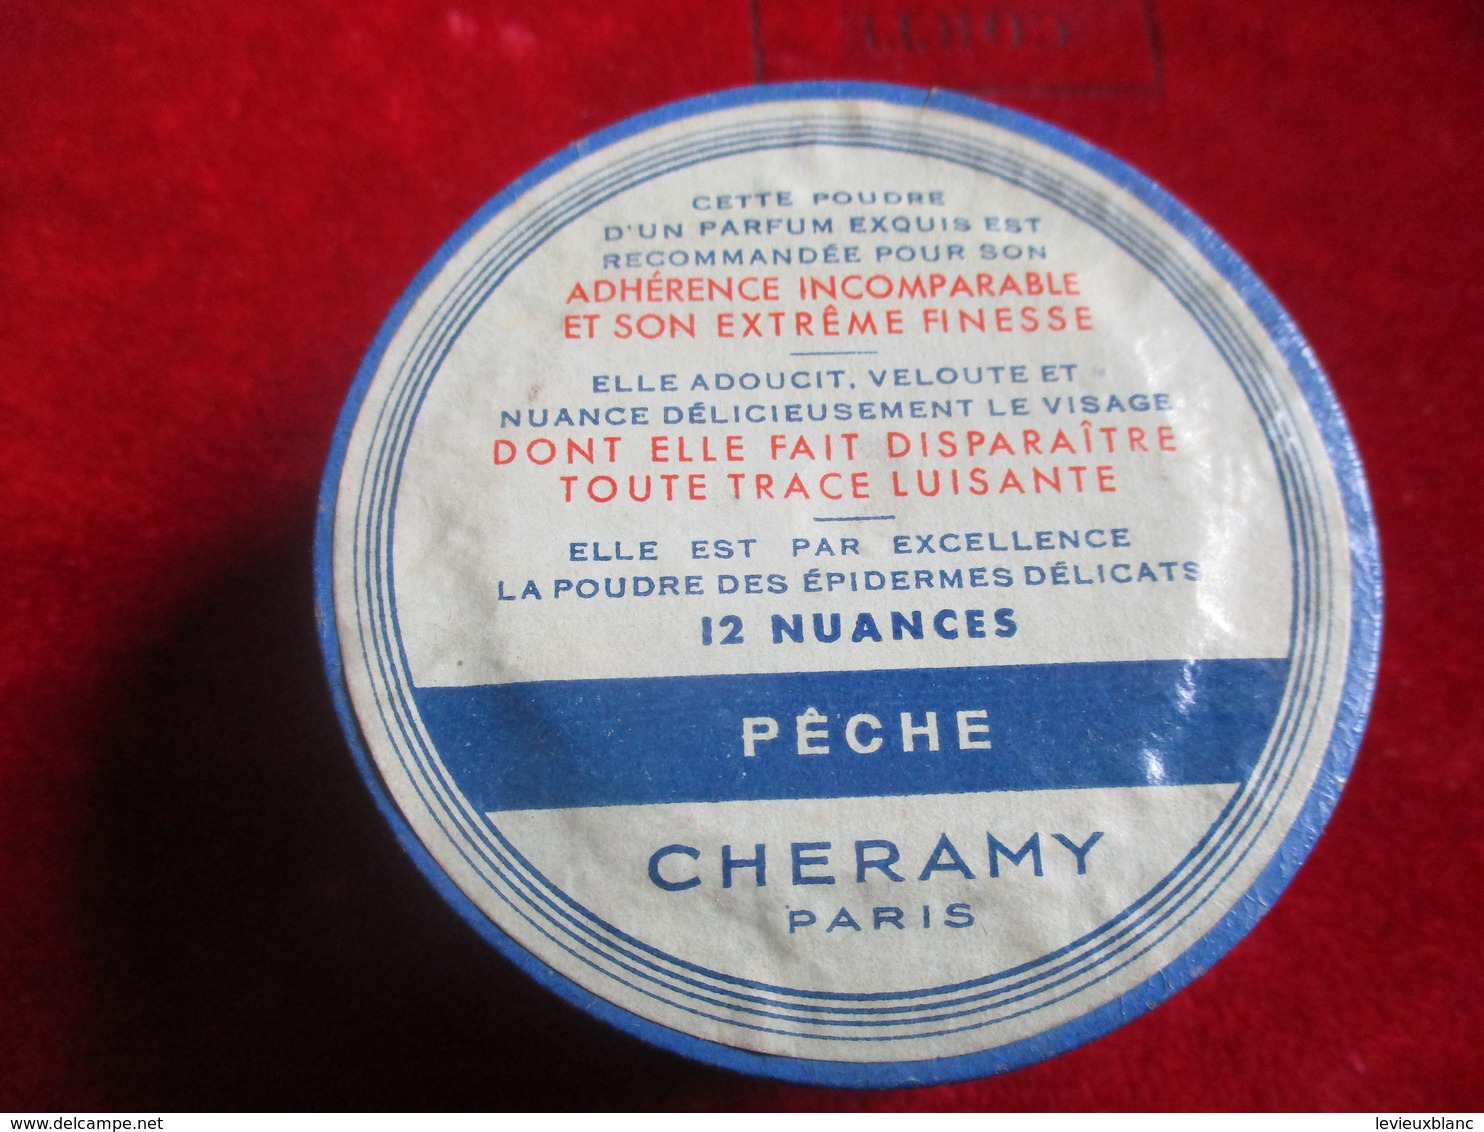 Maquillage/Boite de Poudre de riz/ CHERAMY, Paris/ Poudre Veloutée / Pêche /Vers 1930-50    PARF188